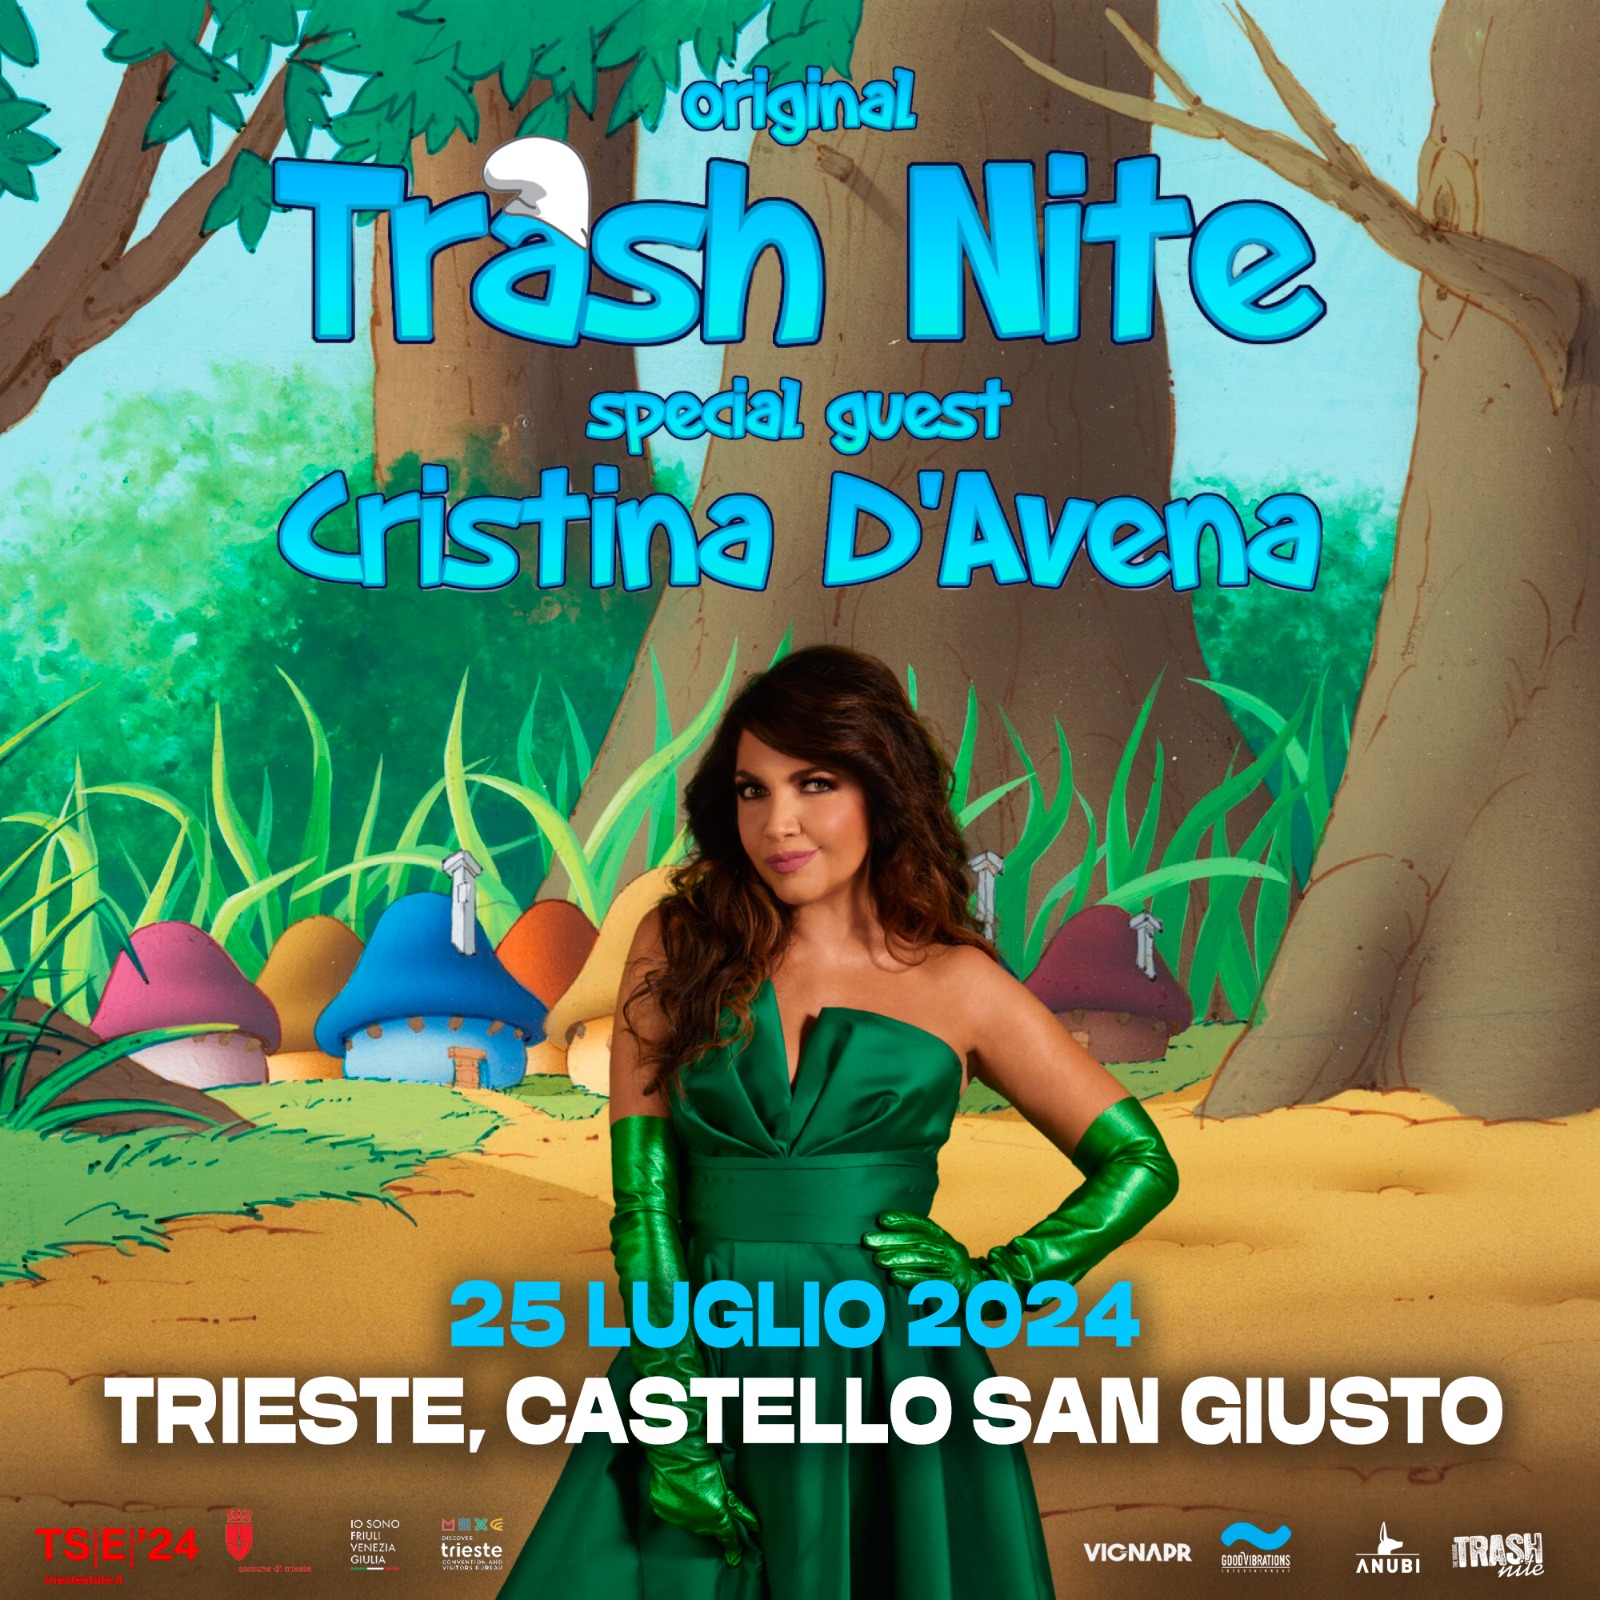 Trash Nite giovedì 25 luglio 2024 al Castello di San Giusto con Cristina D’Avena